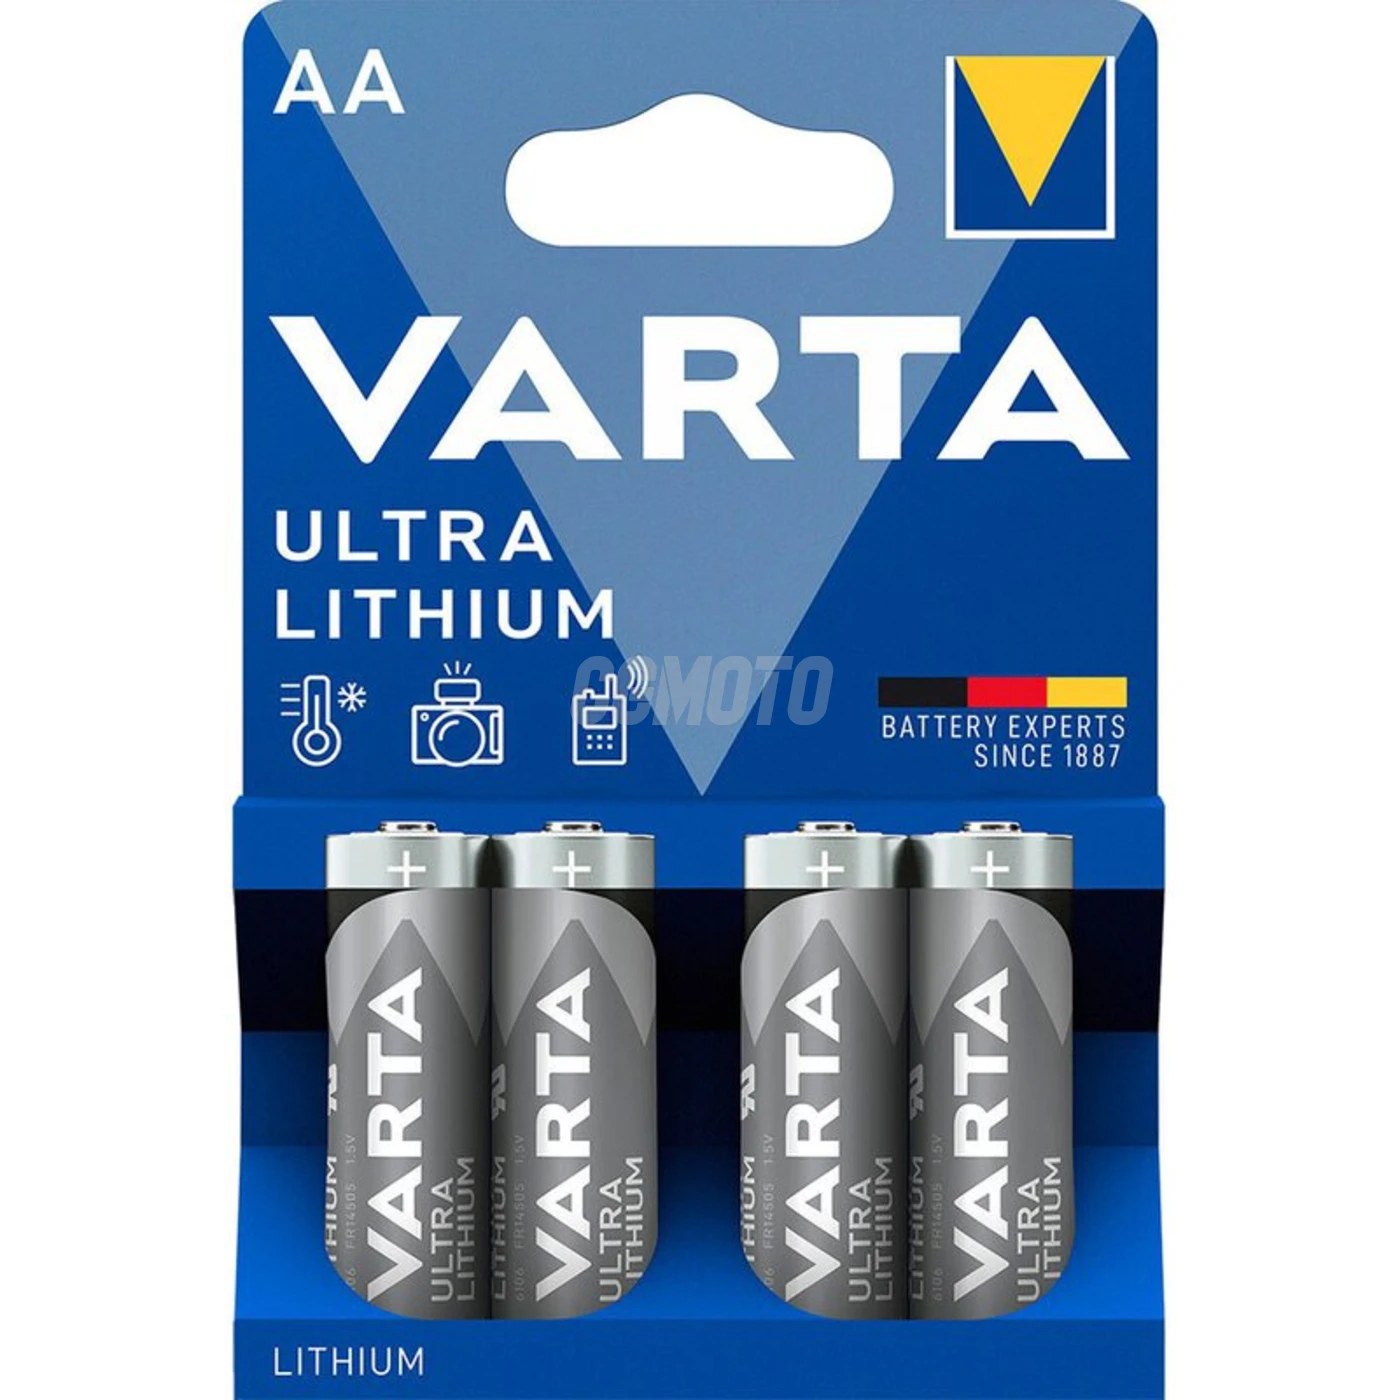 Varta lithium STILO/AA x 4 pile (blister)